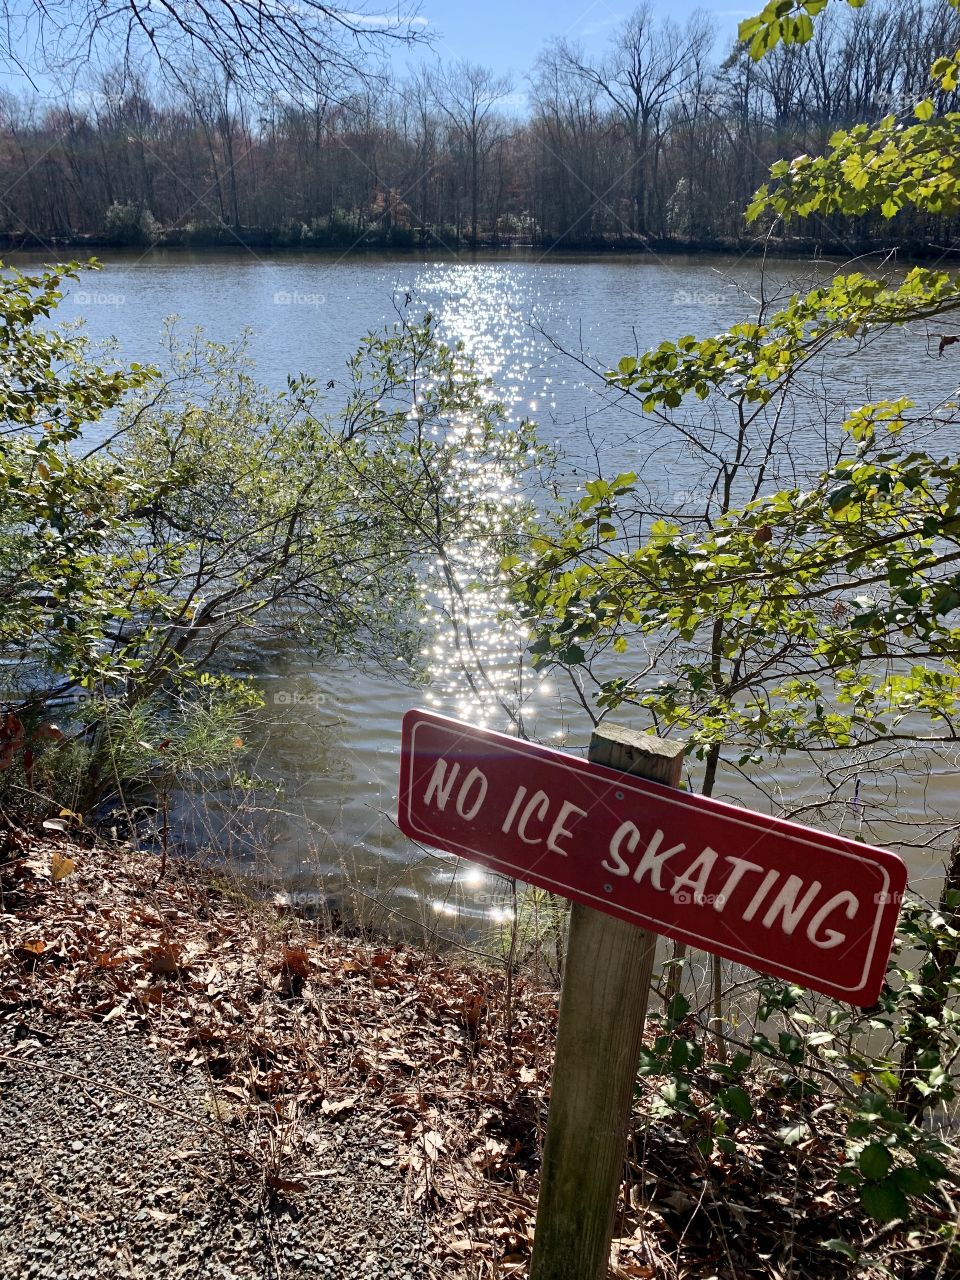 No ice skating